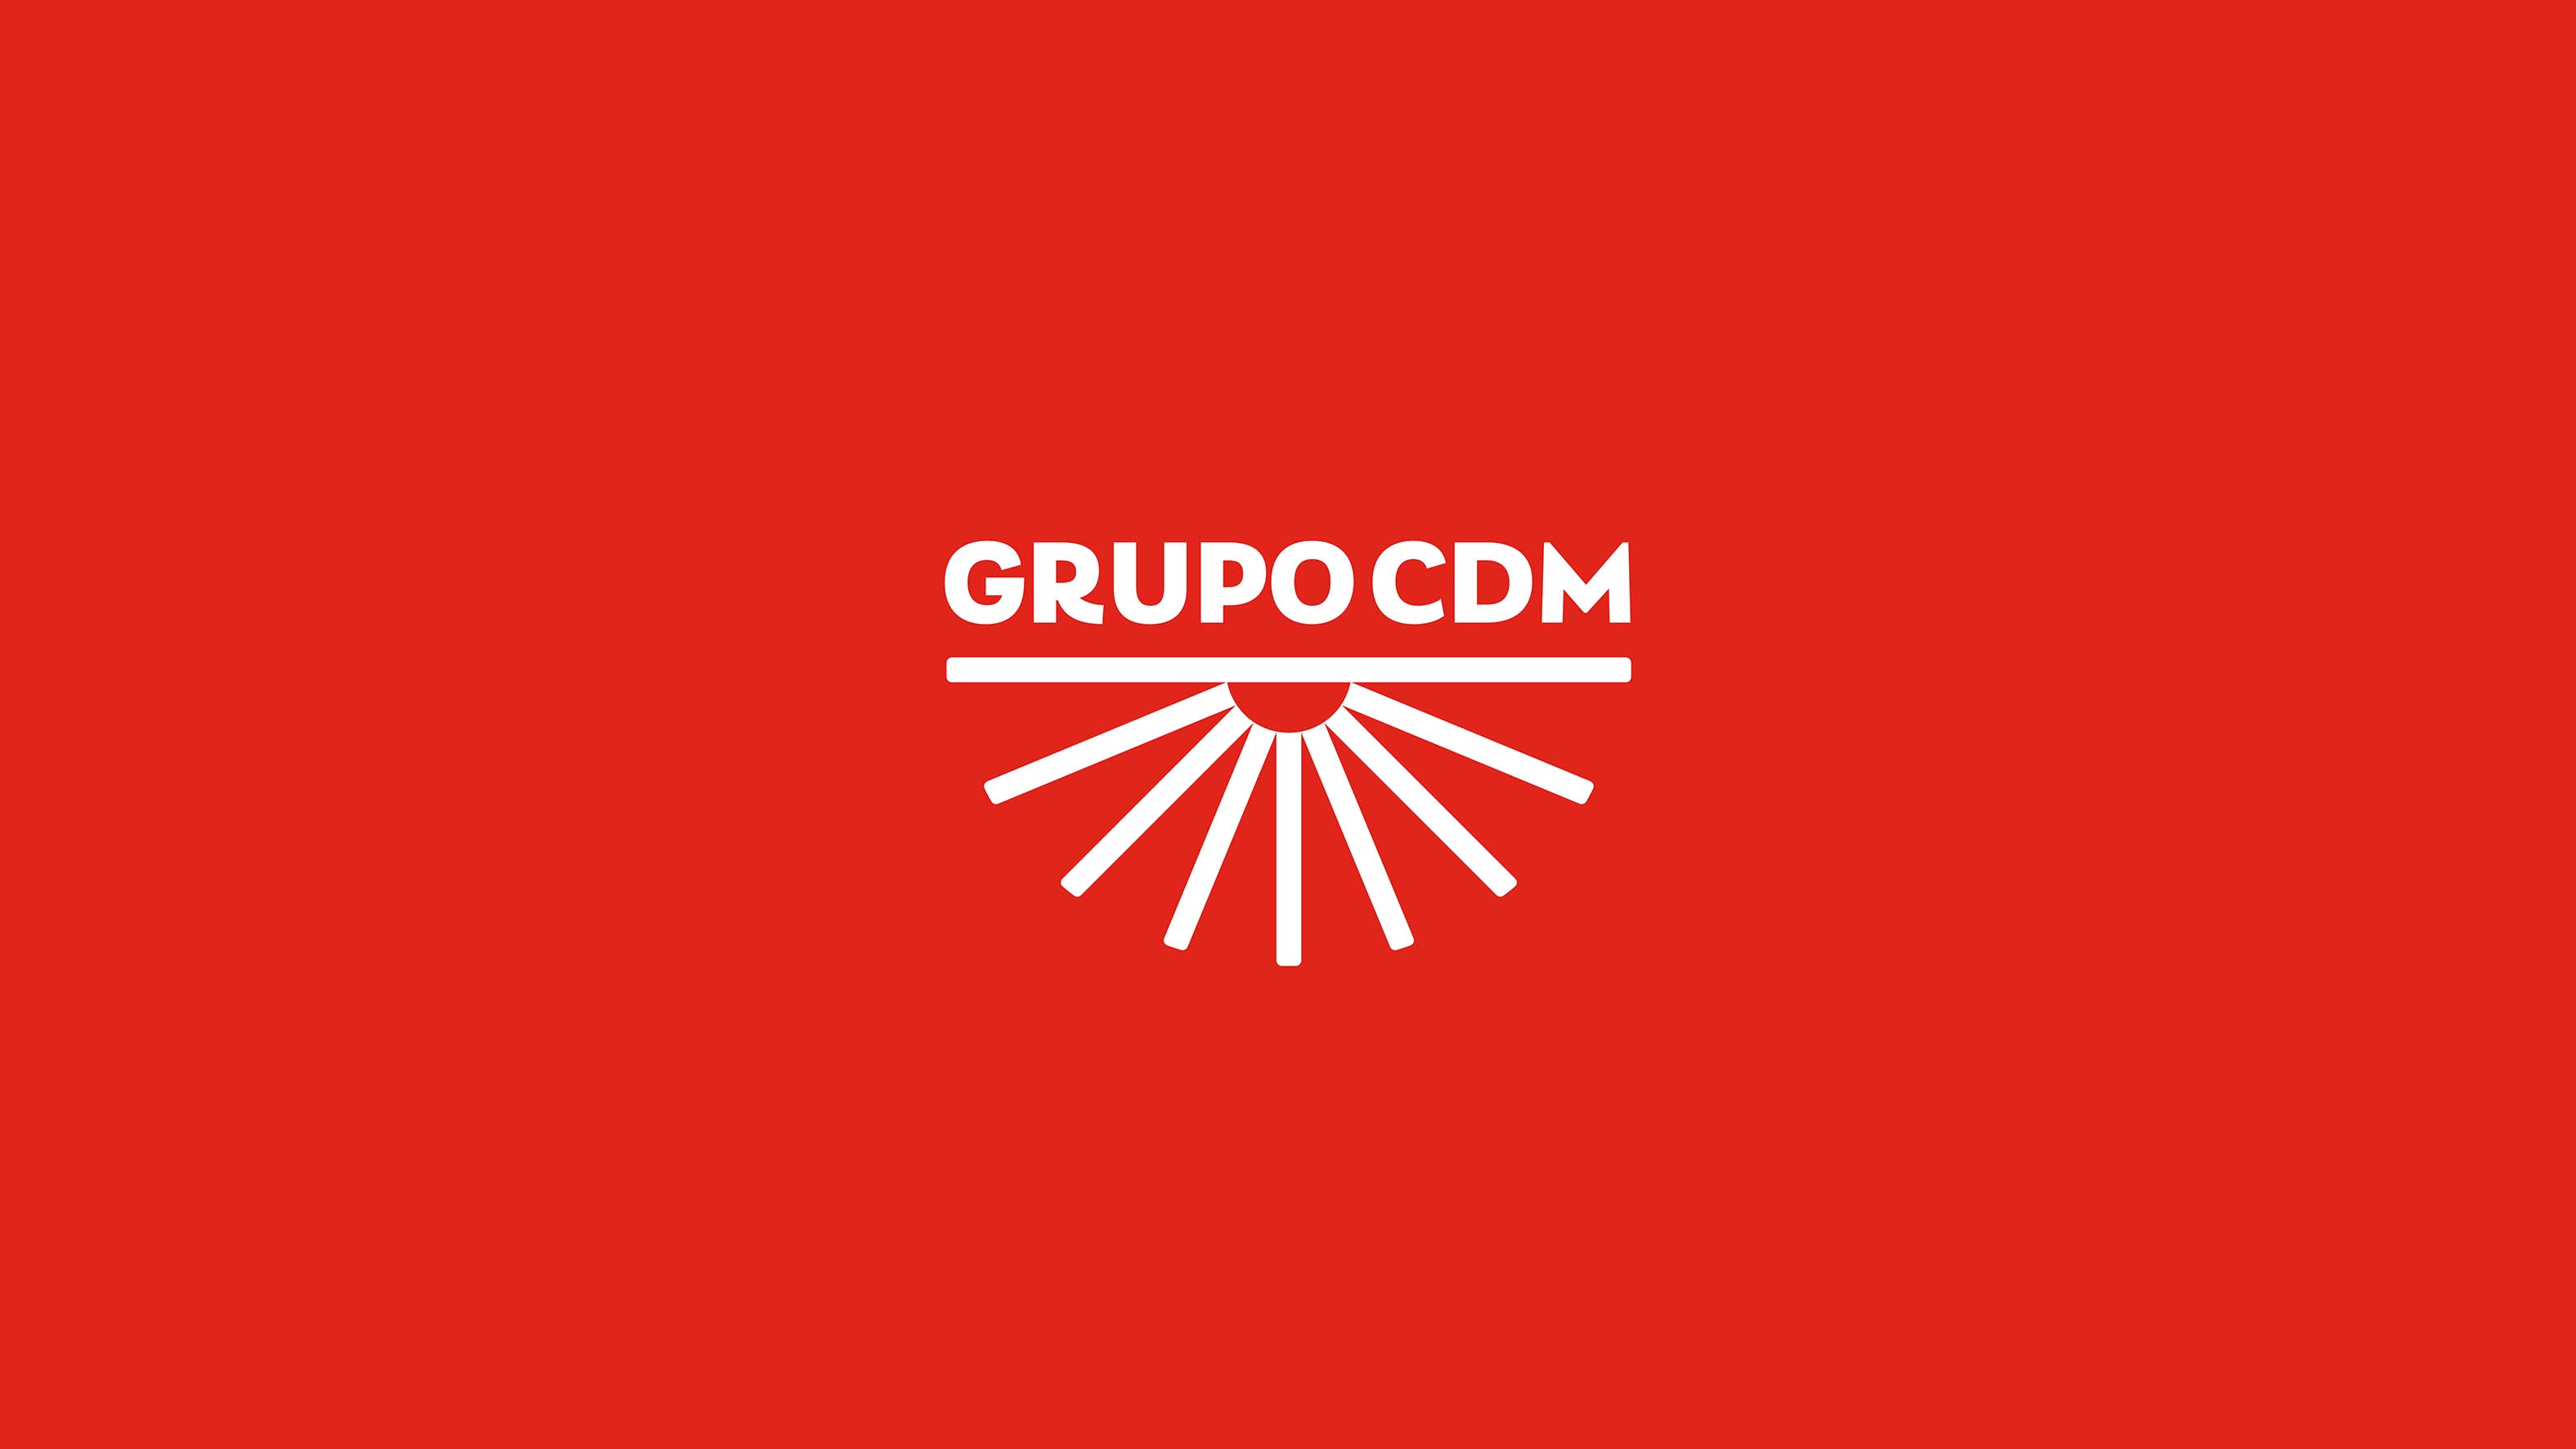 Grupo CDM apresenta identidade visual criada pela agência Greco Design